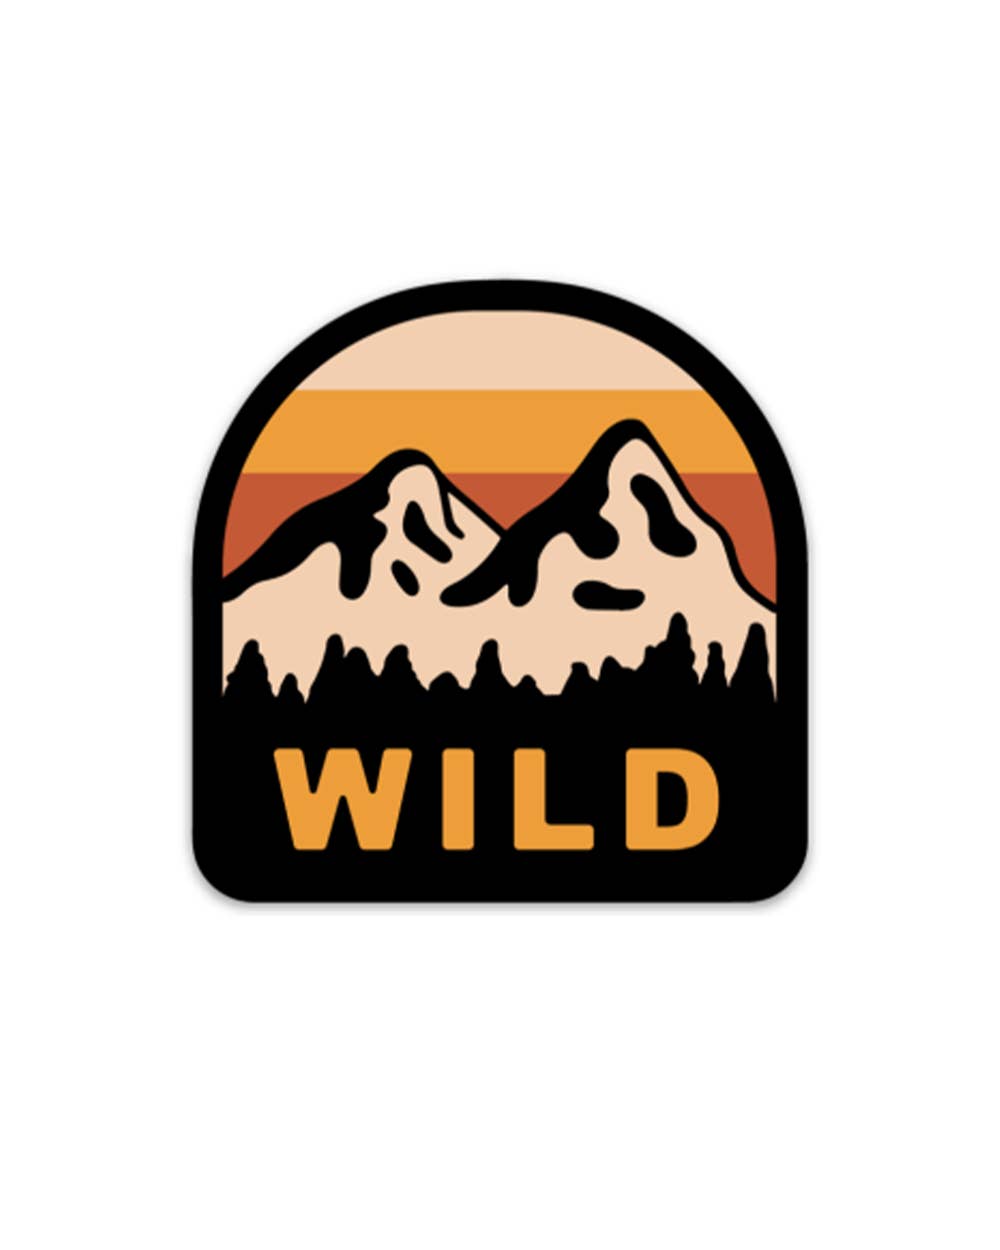 Wild mountain sticker by Keep Nature Wild